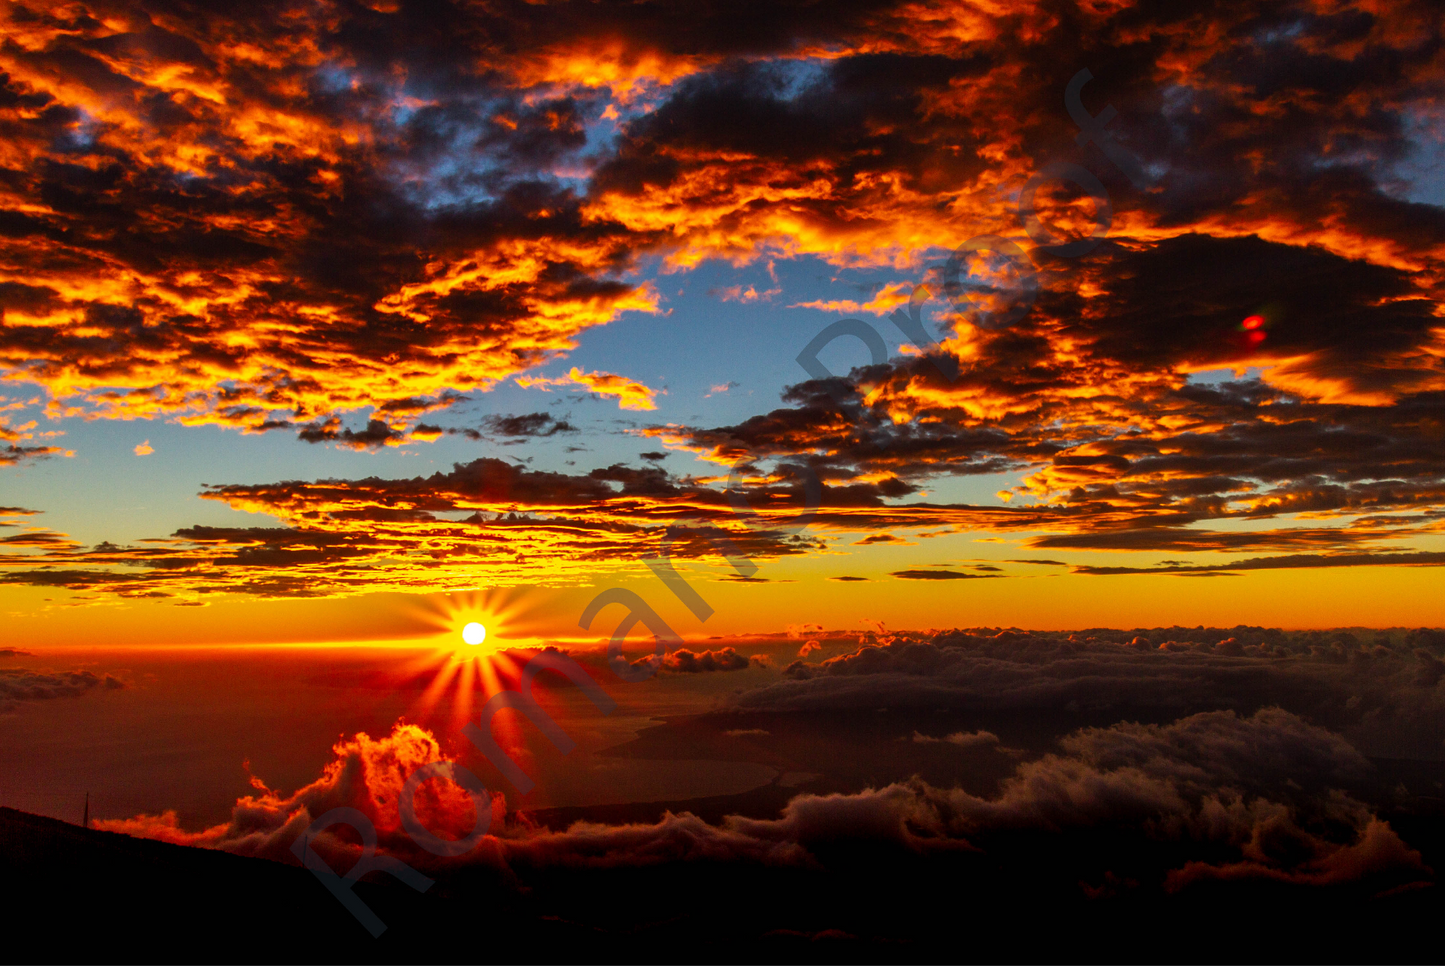 1st Sunrise over Haleakala